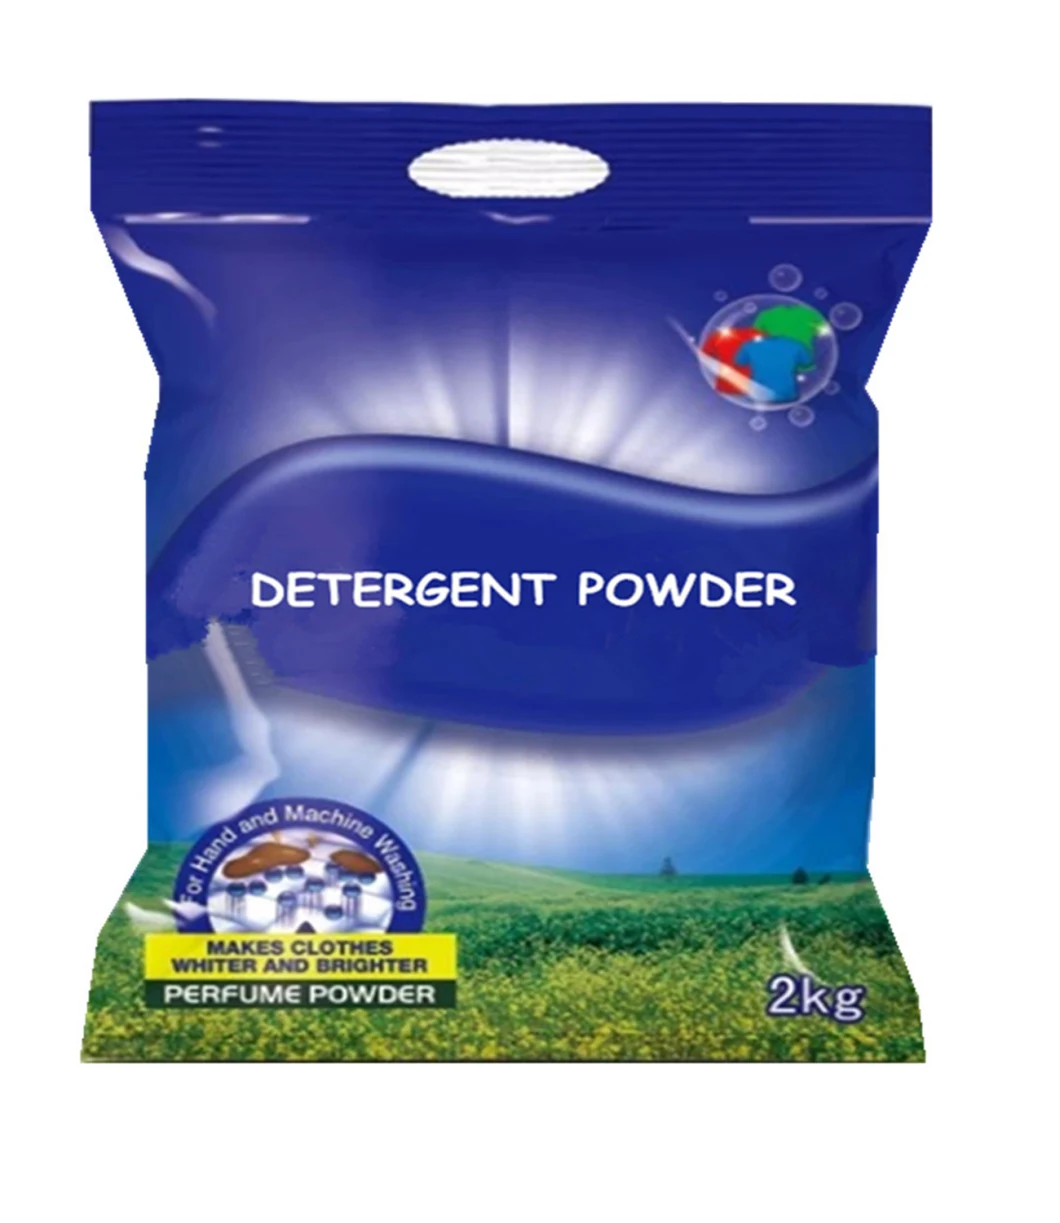 quick cleaning lessive en poudre/laundry detergent powder/laundry soap